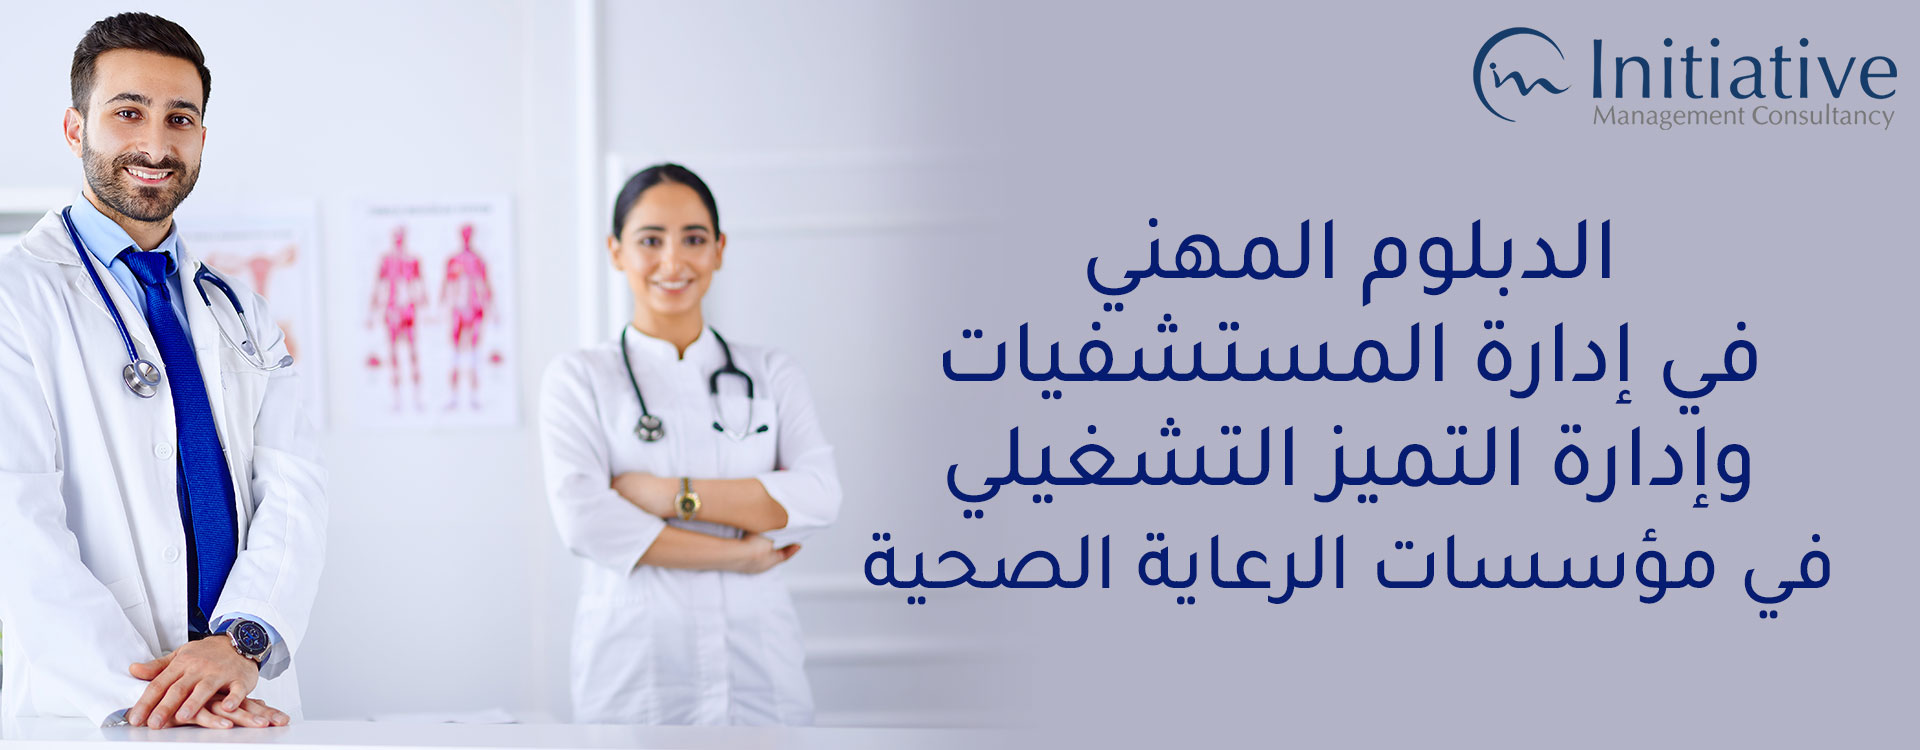 الدبلوم المهني في إدارة المستشفيات وإدارة التميز التشغيلي في مؤسسات الرعاية الصحية